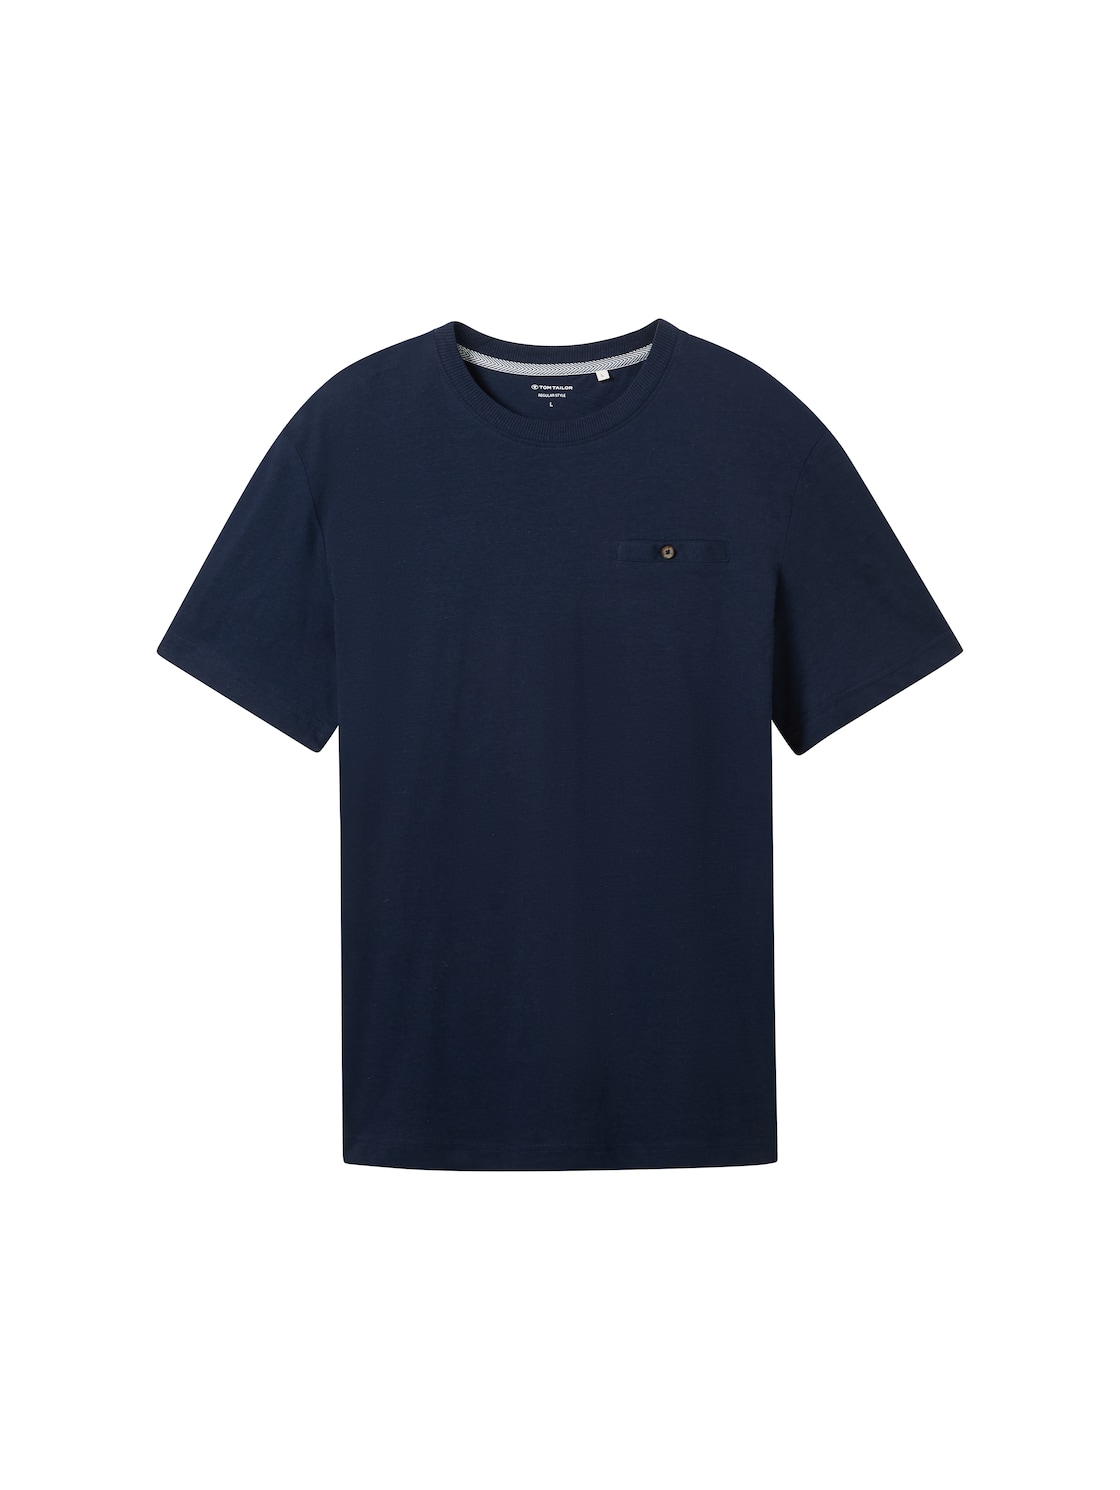 TOM TAILOR Herren T-Shirt mit Leinenanteil, blau, Uni, Gr. XXL von Tom Tailor